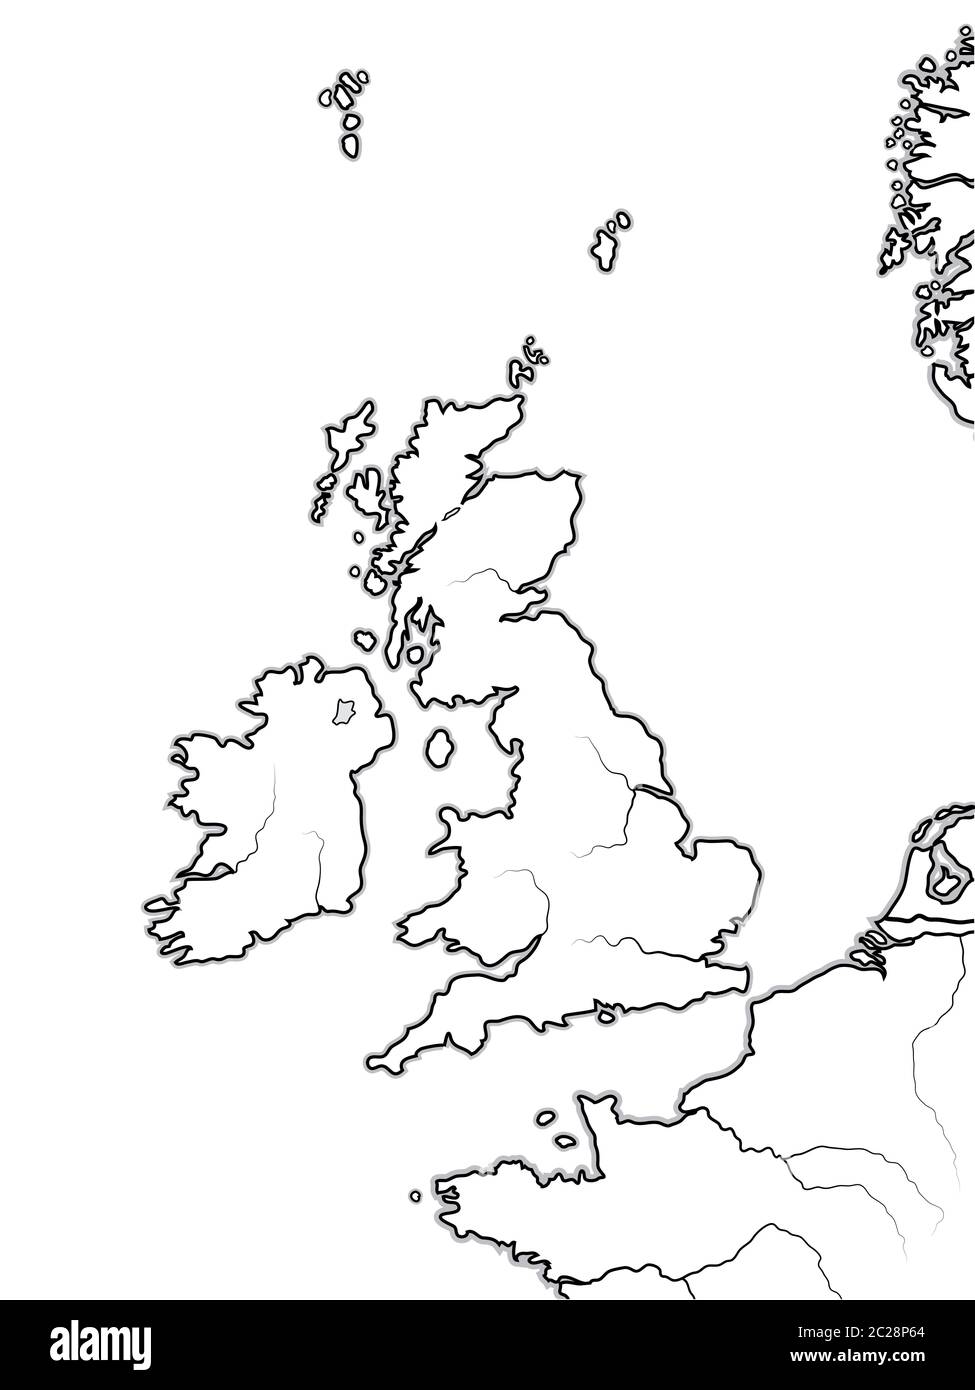 Carte des terres ANGLAISES: Royaume-Uni, Grande-Bretagne, Angleterre, Ecosse, pays de Galles et Irlande. Carte géographique. Banque D'Images